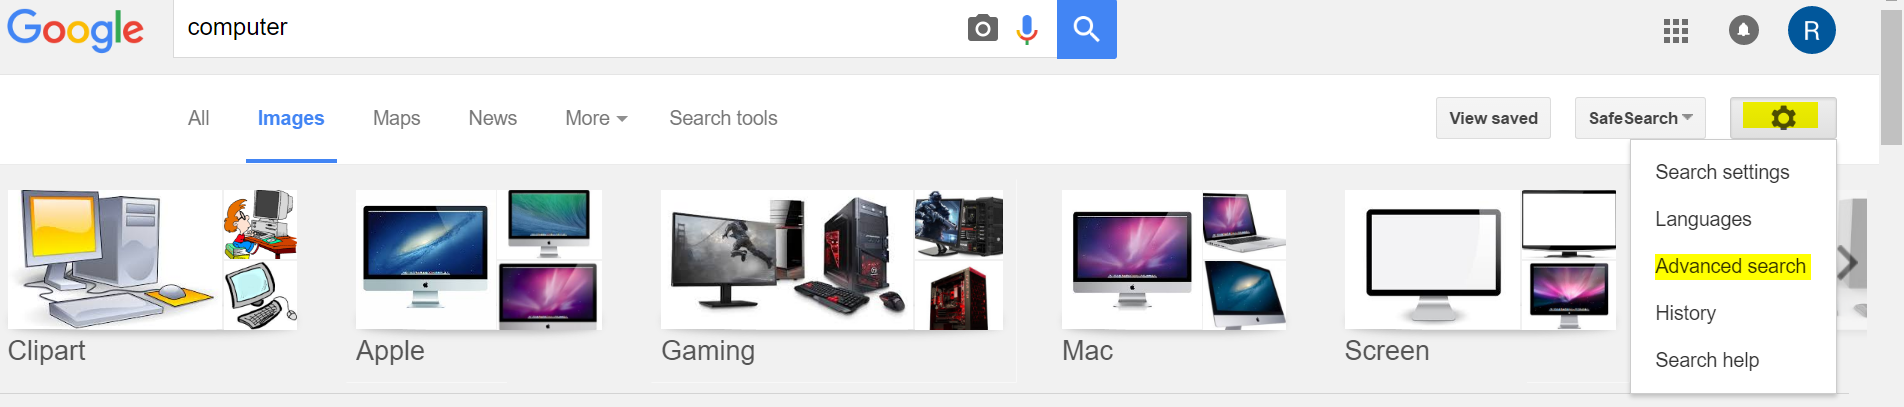 googleimages